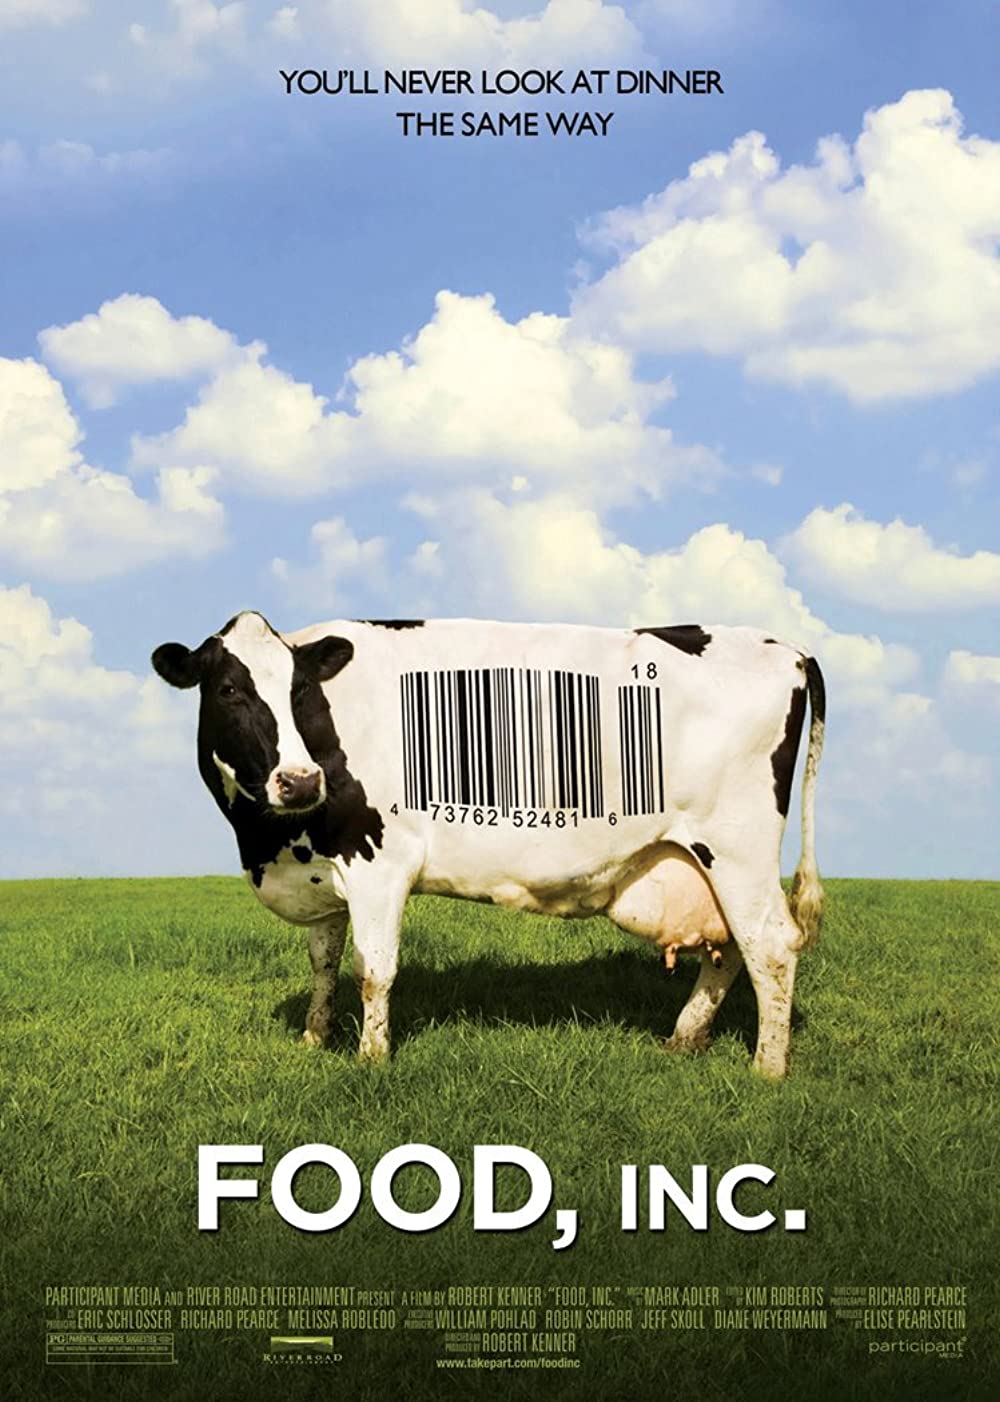 Filmbeschreibung zu Food, Inc. - Was essen wir wirklich?